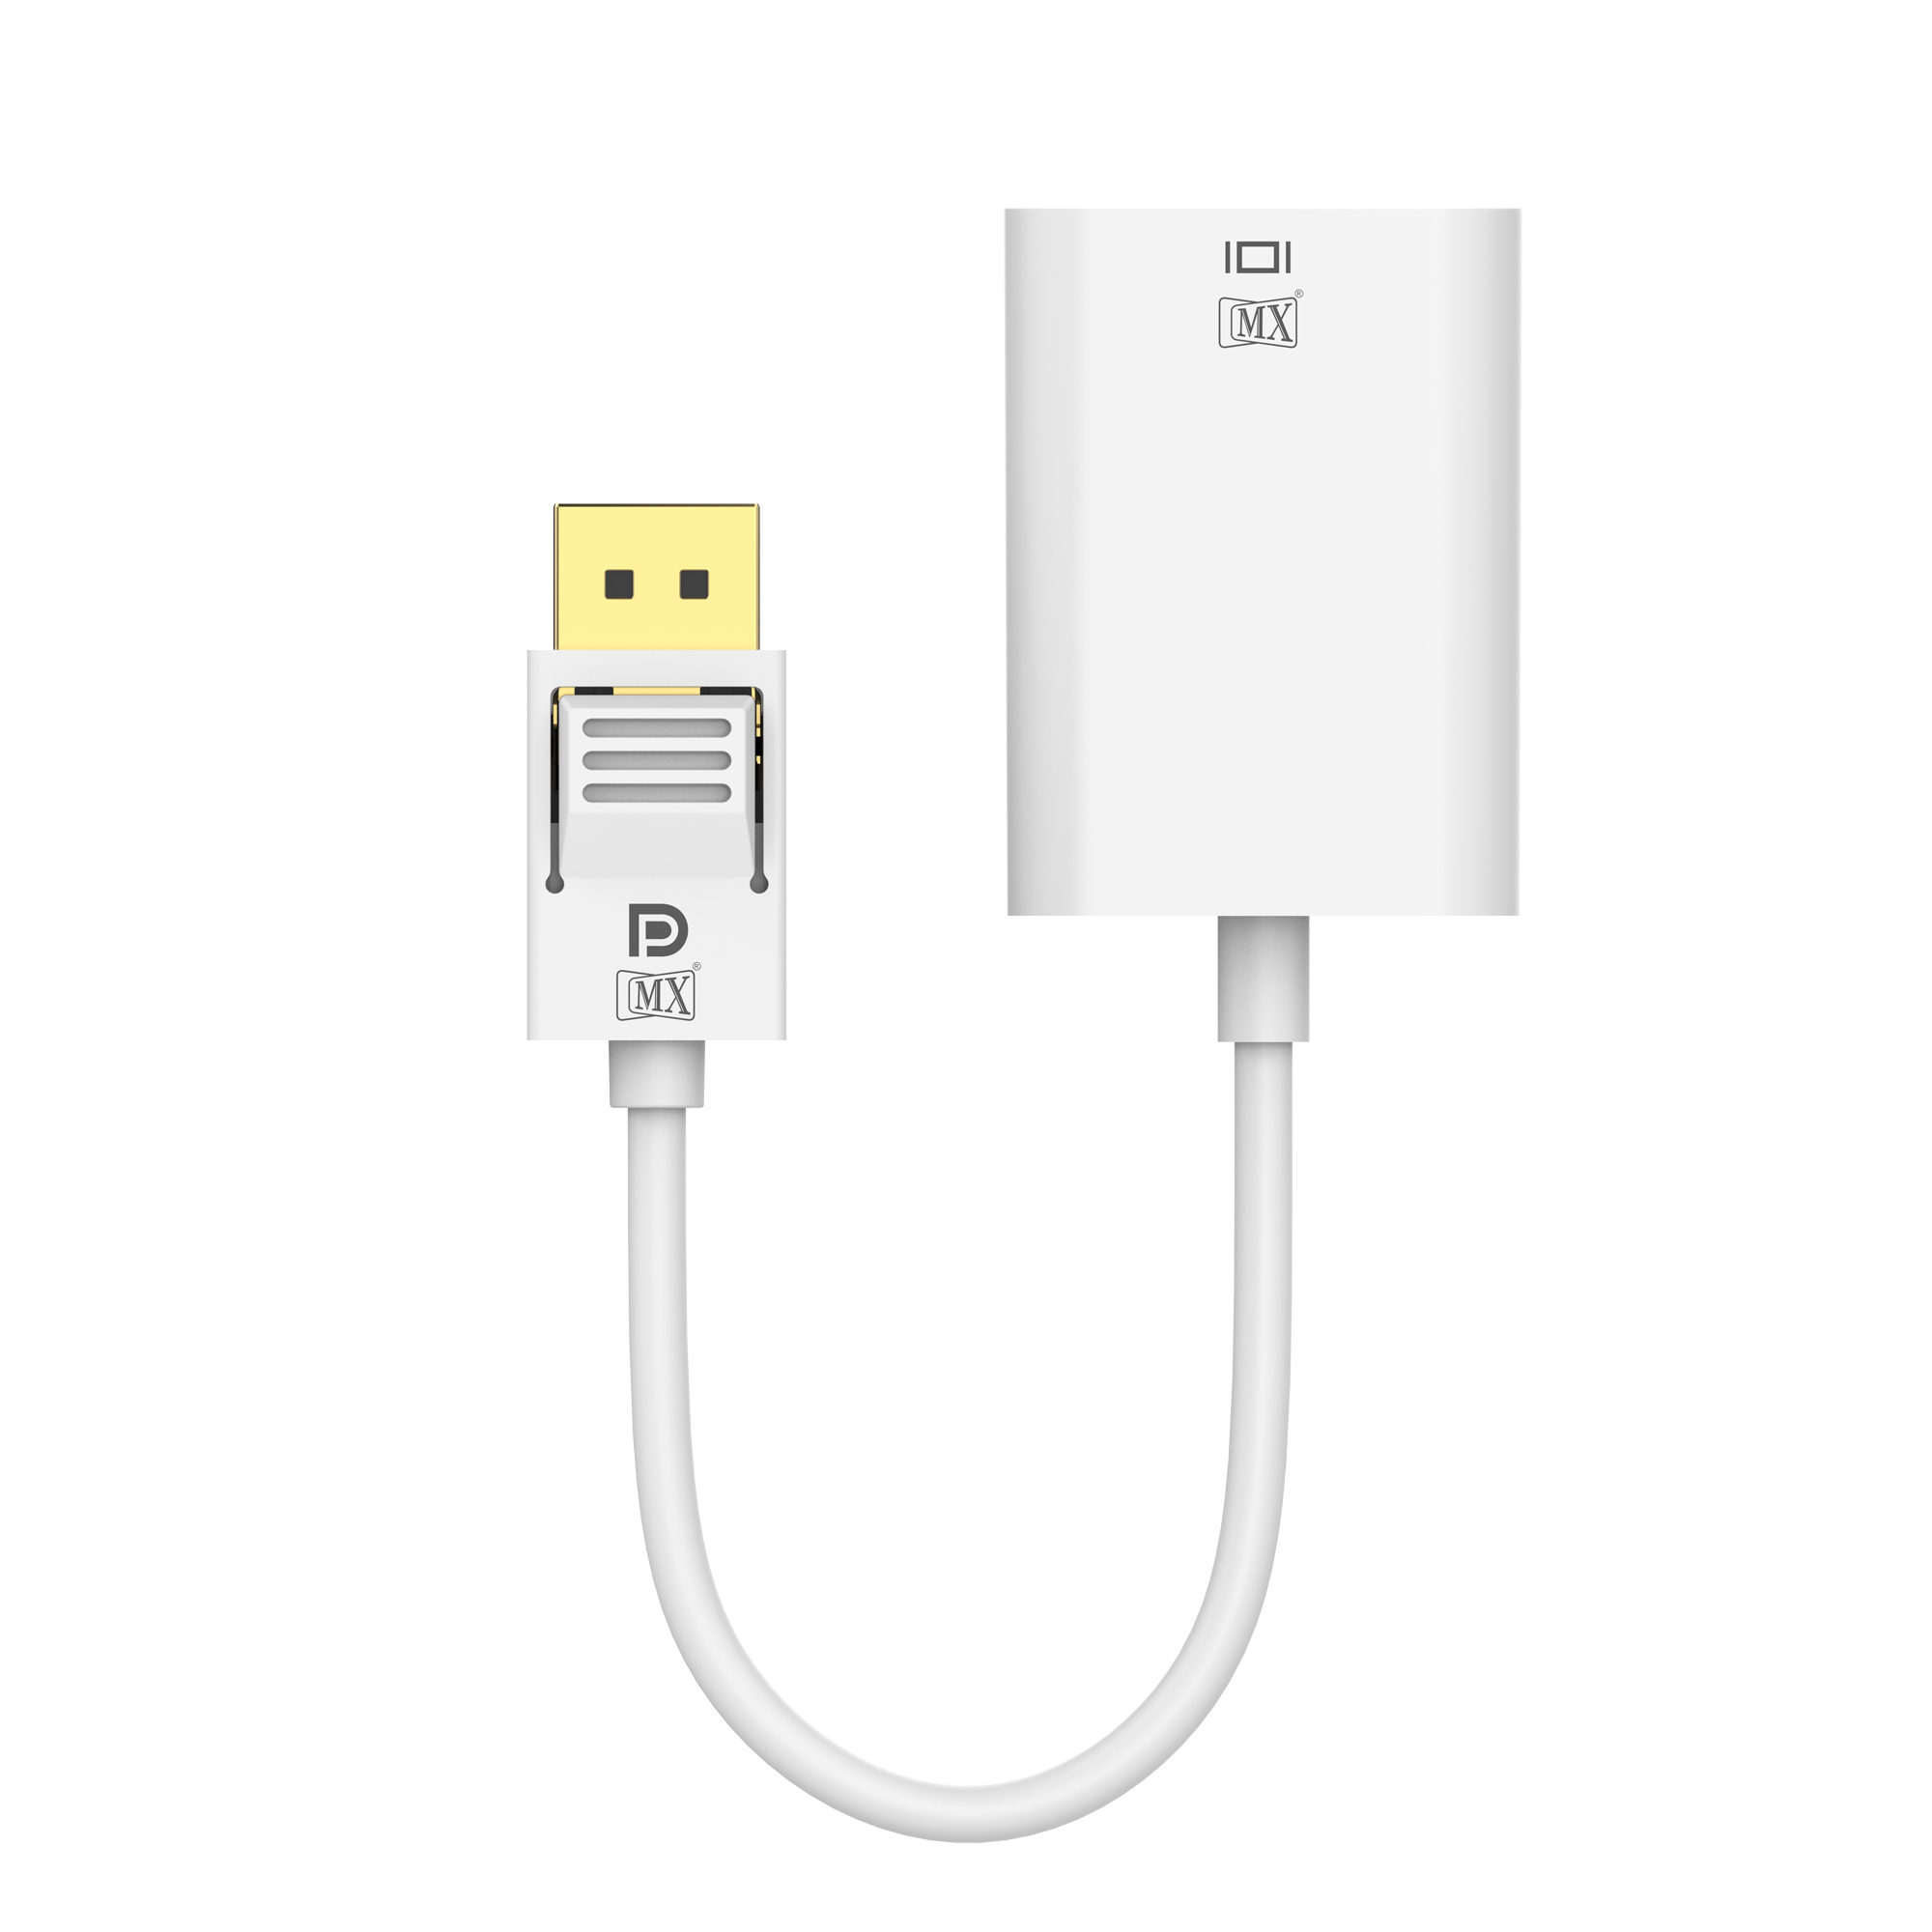 Lightning to USB 3 Camera Adapter - Apple (MX)